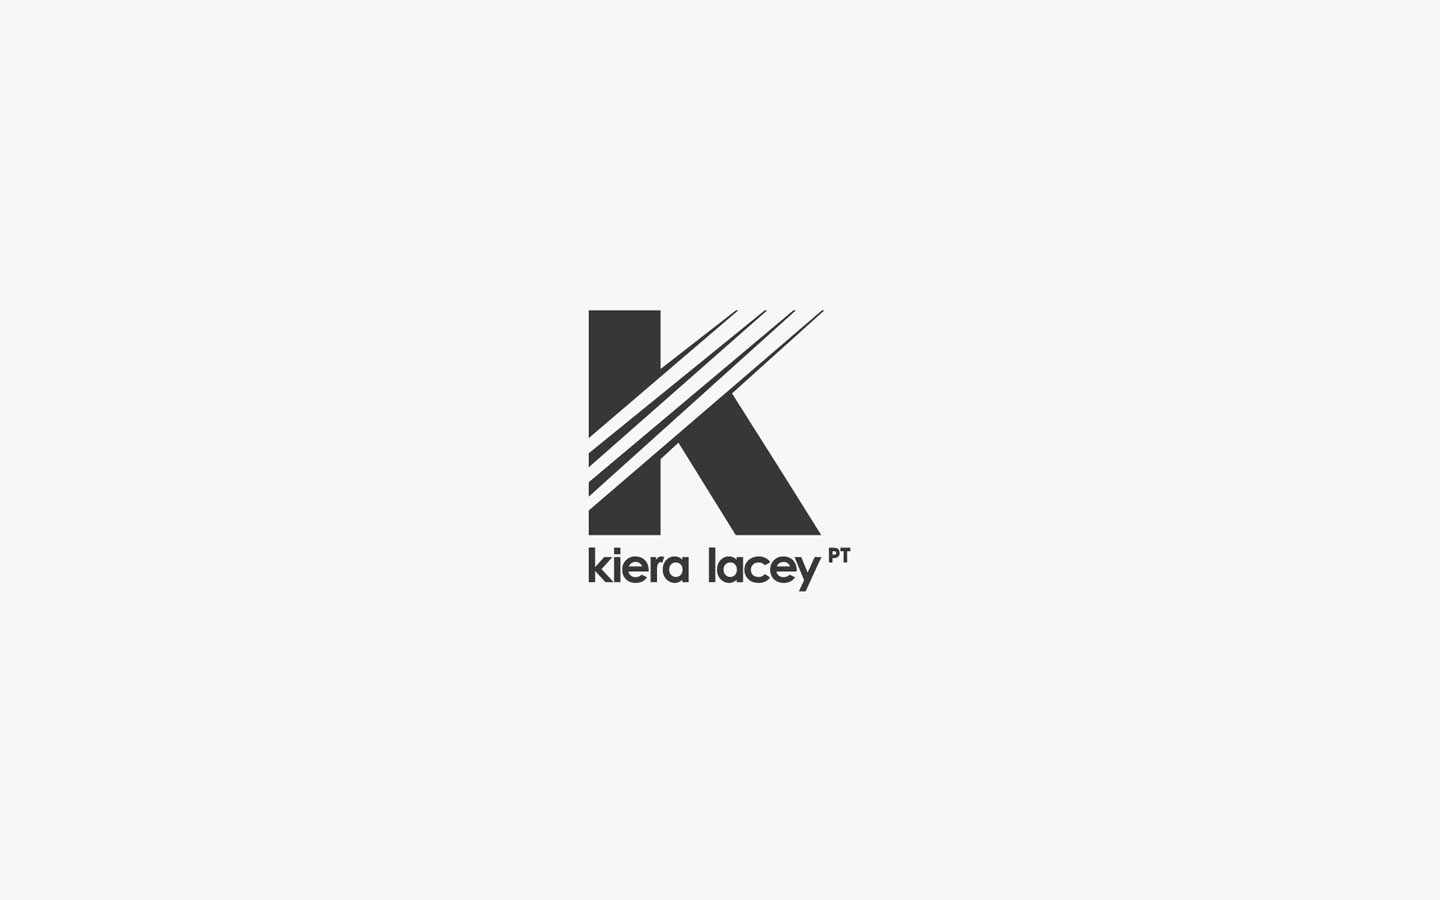 Kiera Lacey Logo Design in Mono